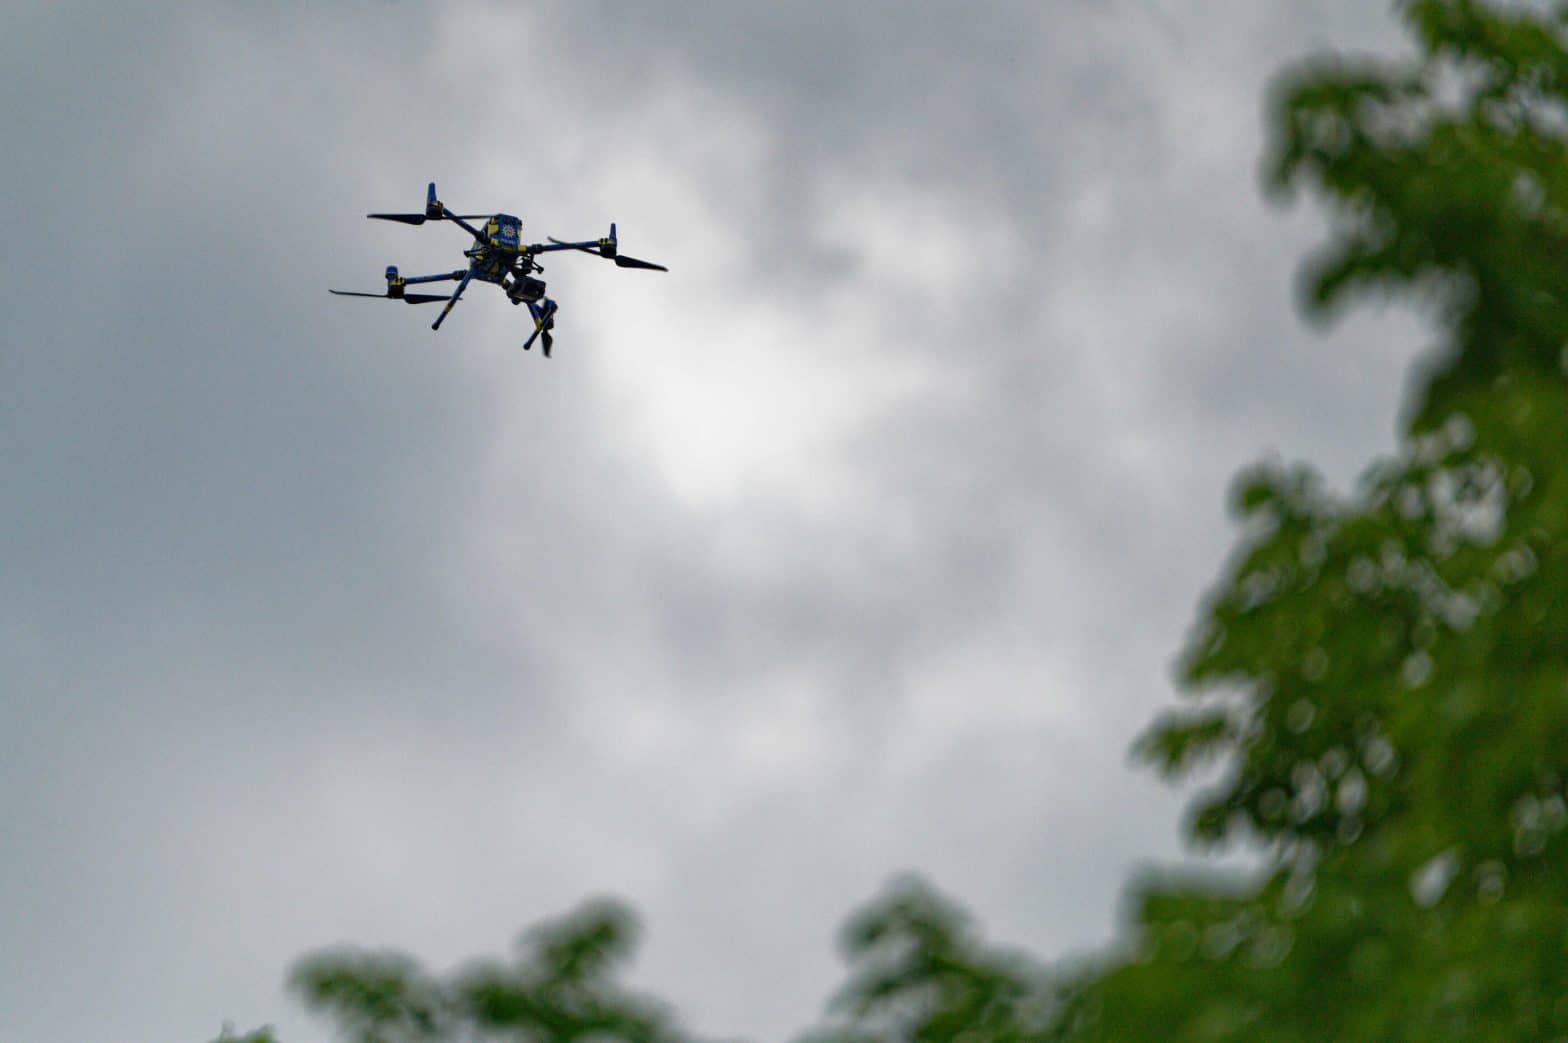 derniere actu pour les passionnes la justice sanctionne la prefecture pour utilisation illegale de drones lors dune manifestation